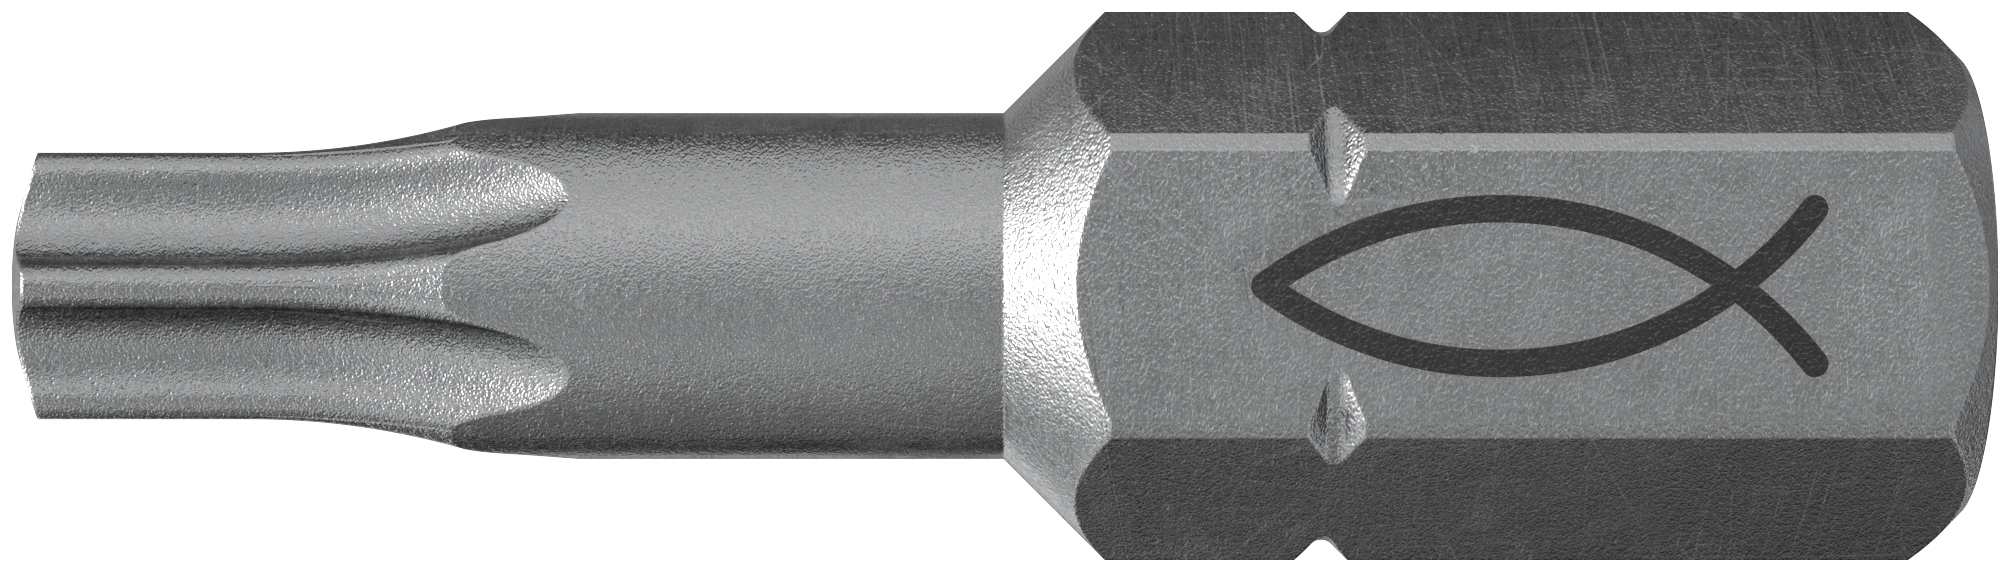 fischer Inserto per avvitatore FPB T 30 PROFI Bit W 10 (10 Pz.) L'inserto per trapano e avvitatore, in acciaio di alta qualit con elevata resistenza all?abrasione per uso professionale fie3768